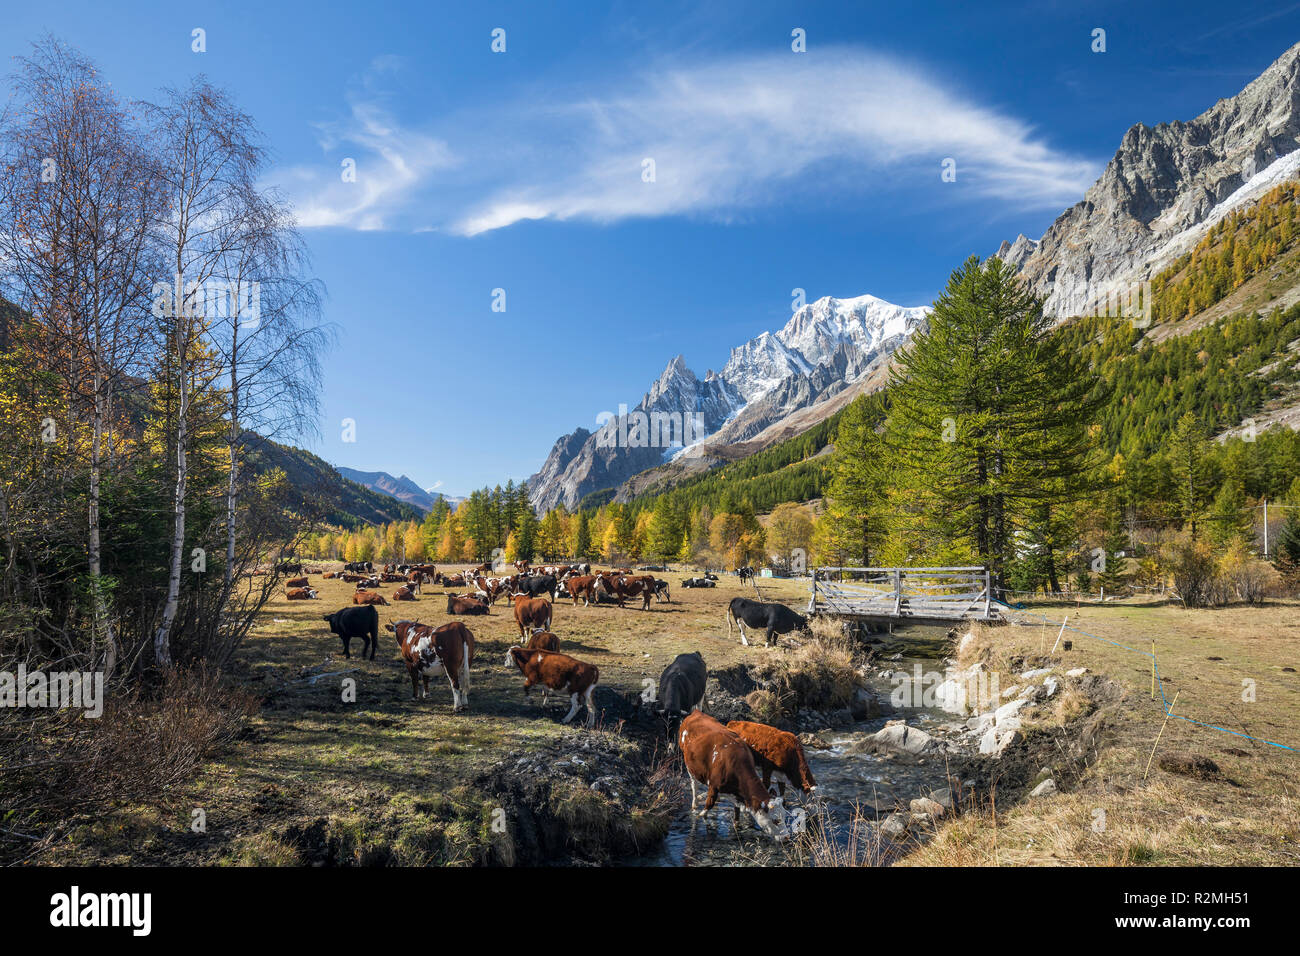 Kuhweide im Alpental herbstlichen Val Ferret, hinten der Mont Blanc (4810m), Nähe Courmayeur, Provinz Aosta, Aostatal Italien Foto Stock